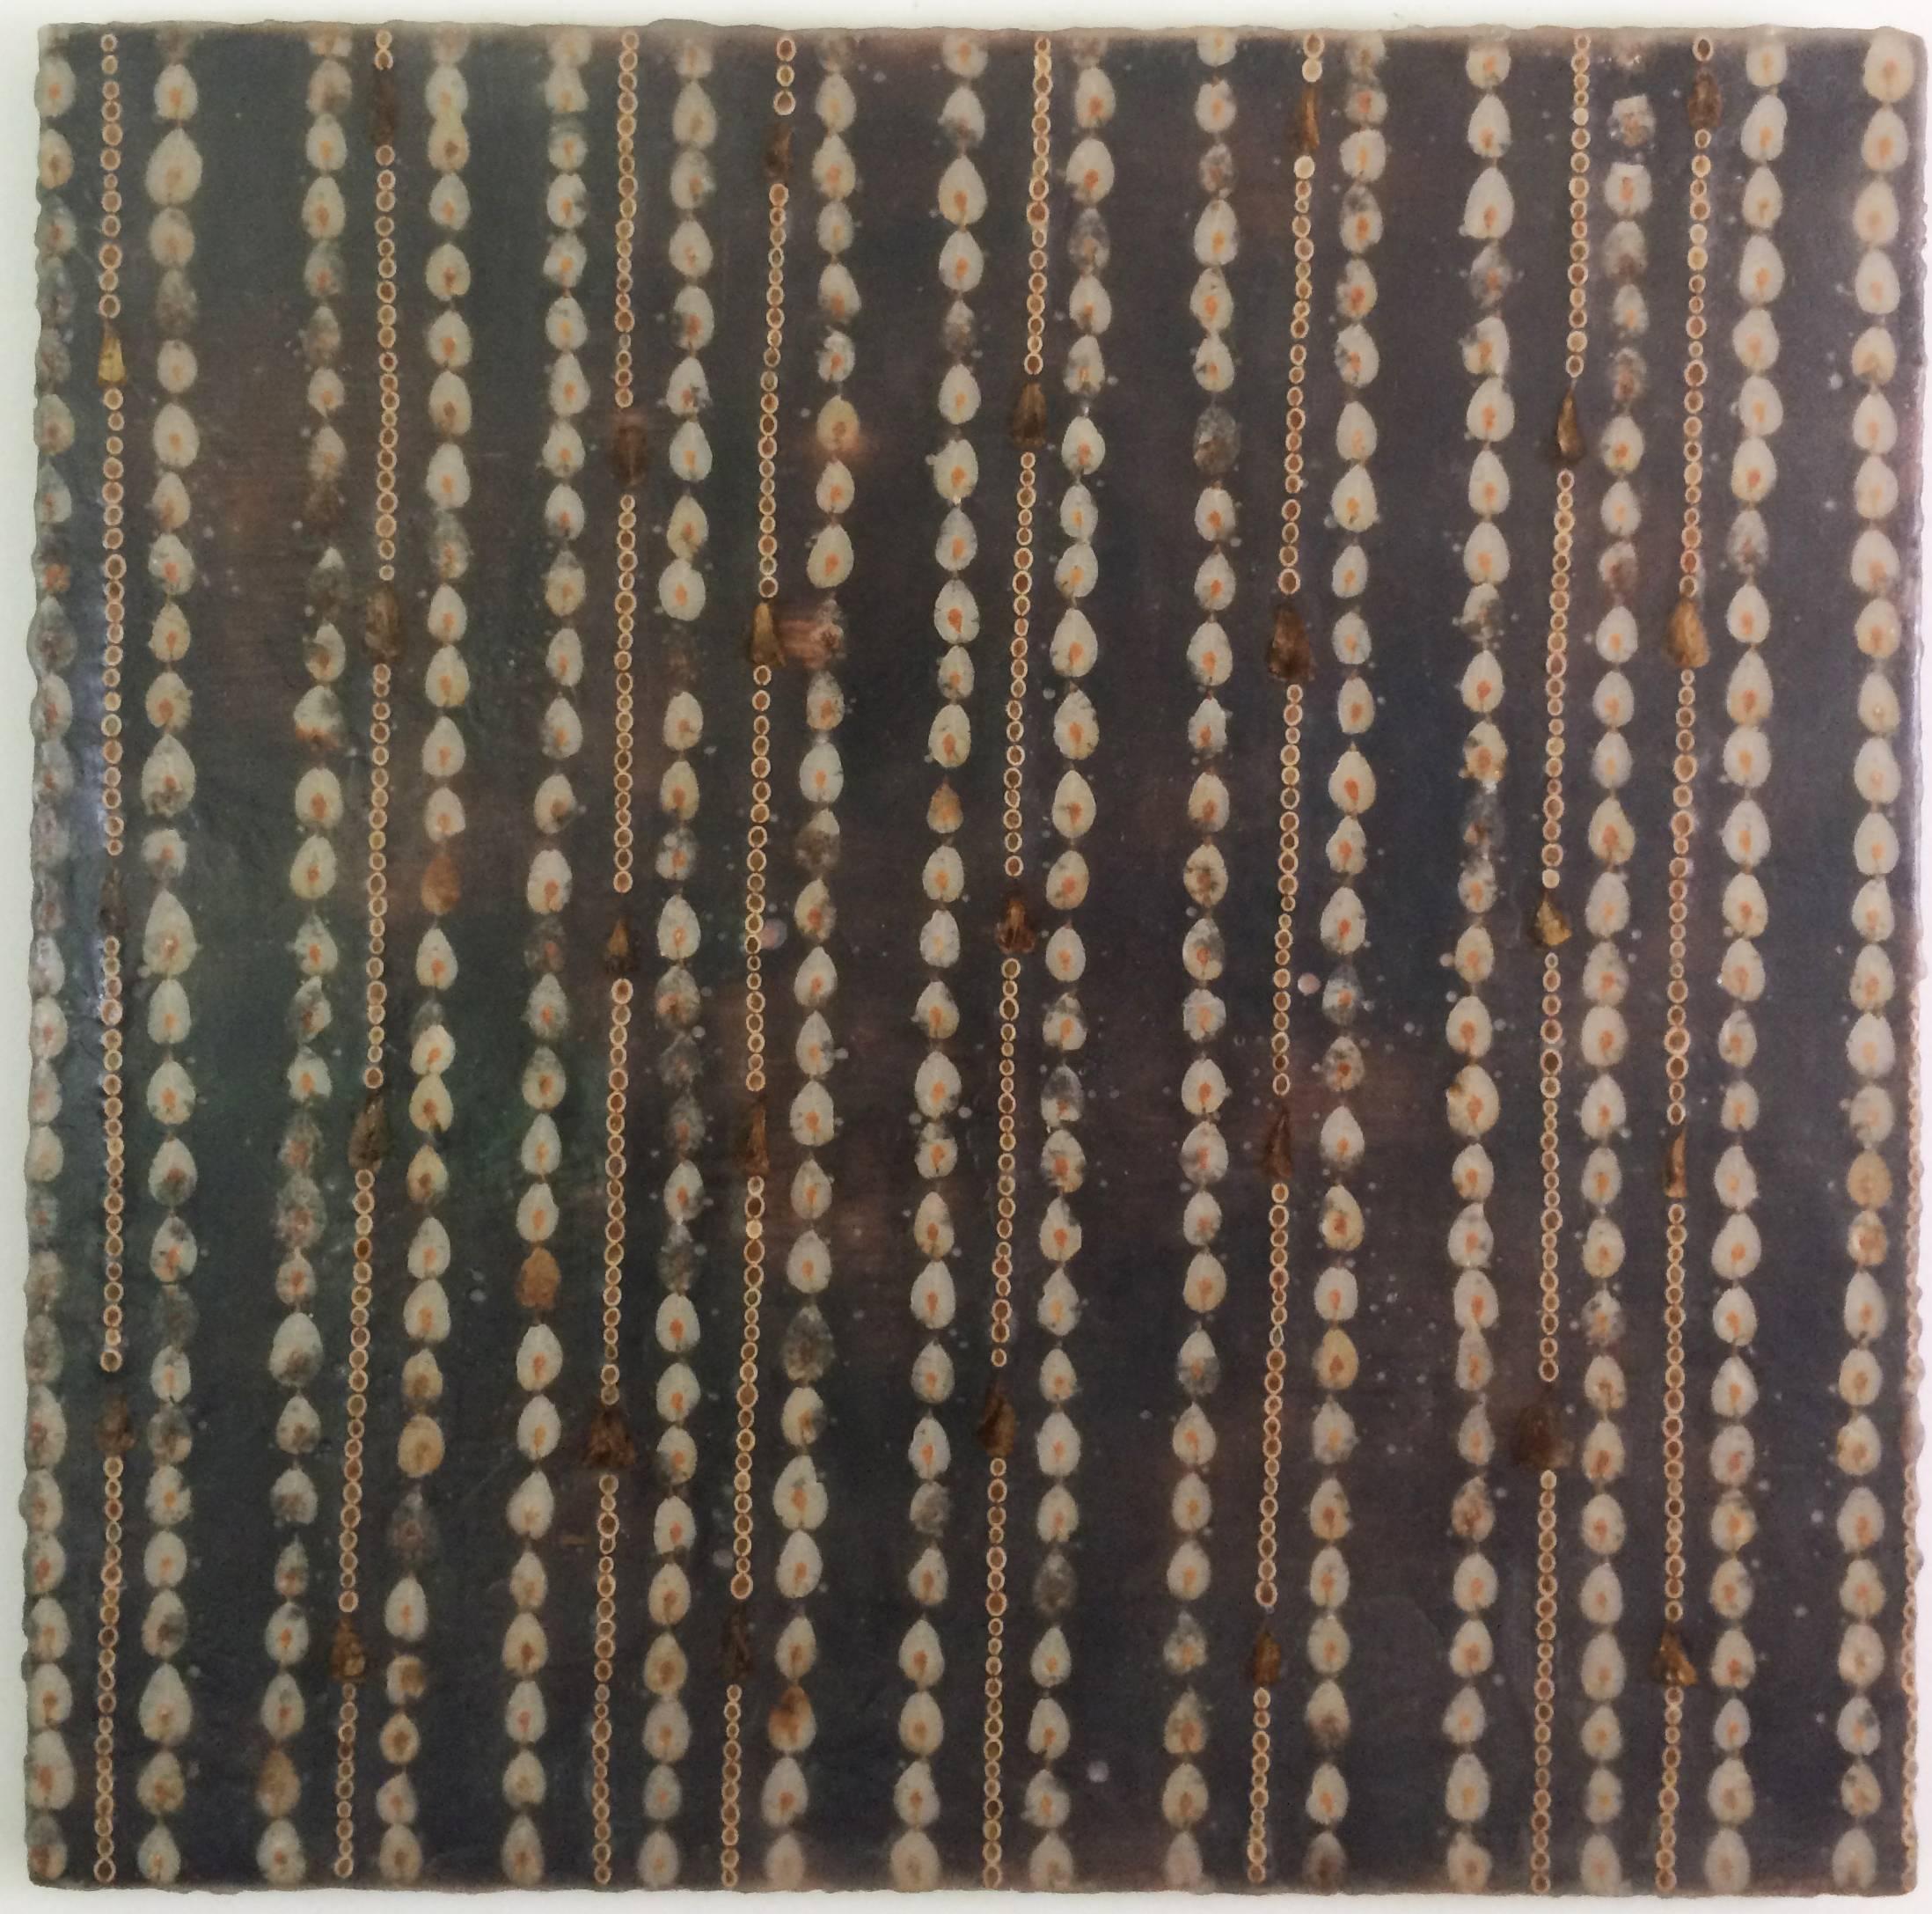 Wallpaper (Modernes schwarzes Enkaustik-Gemälde in Mischtechnik mit braunen Seestern auf Holz)